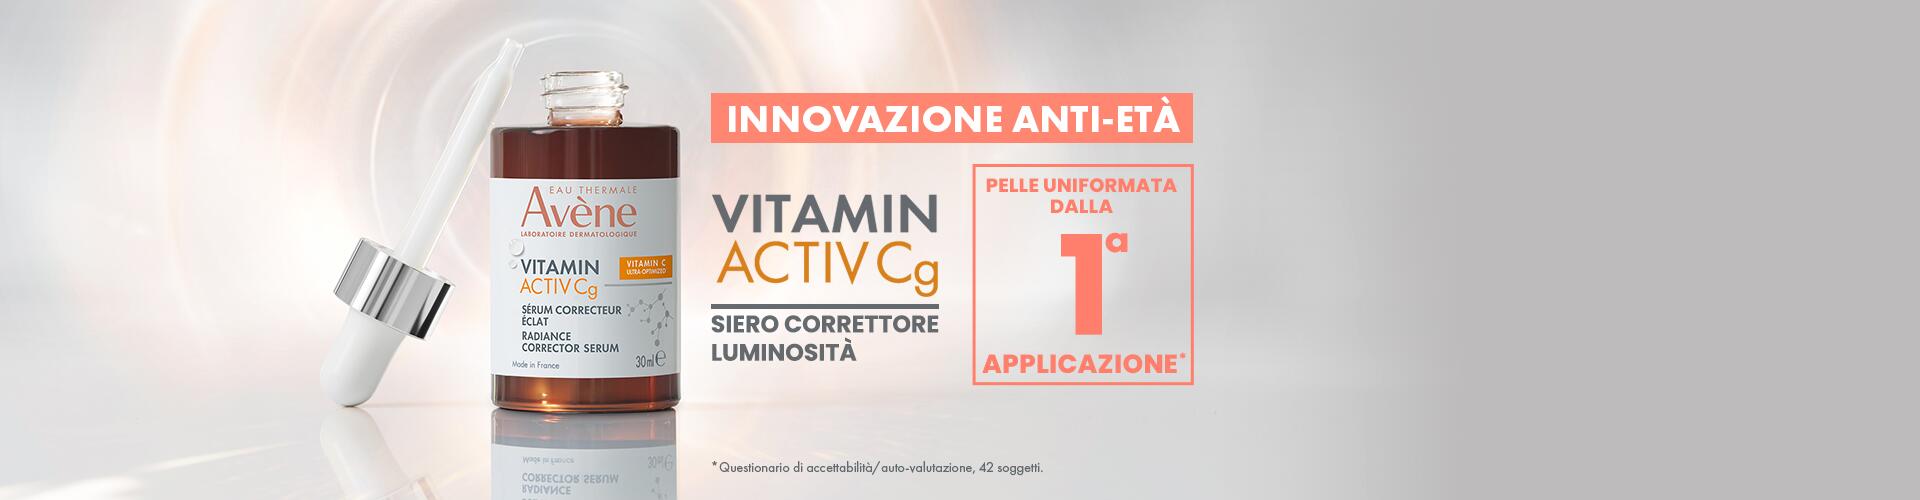 ETA_BannerSito_VitaminACG_Siero_Mobile_1920x500